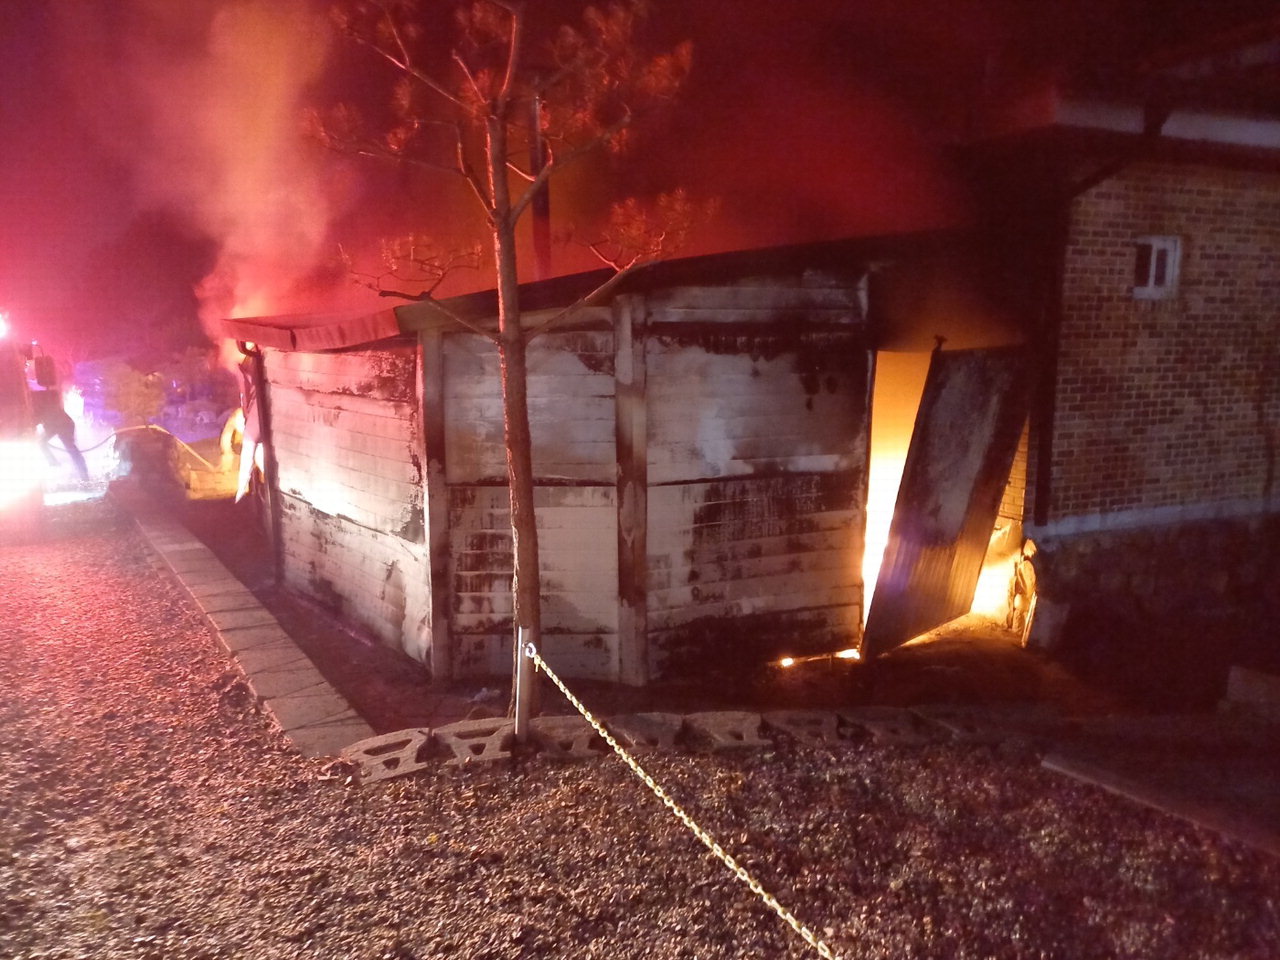 17일 오후 7시 45분께 충북 괴산군 괴산읍 한 주택에서 화재가 발생했다. / 괴산소방서